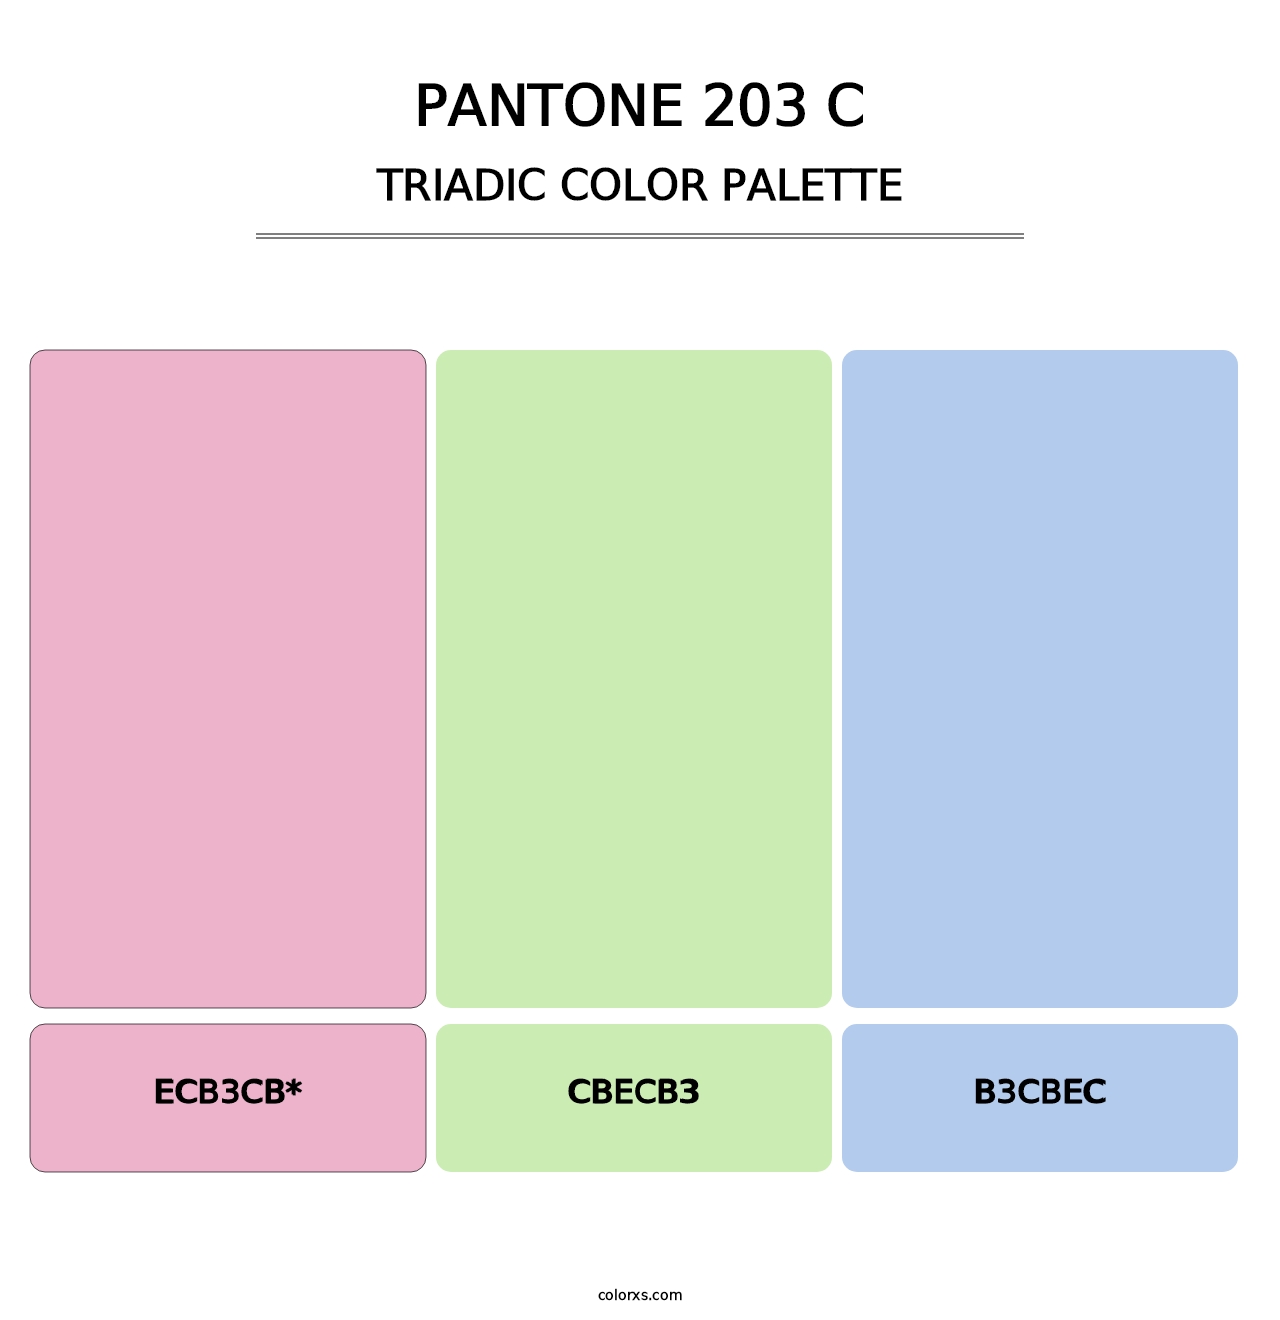 PANTONE 203 C - Triadic Color Palette